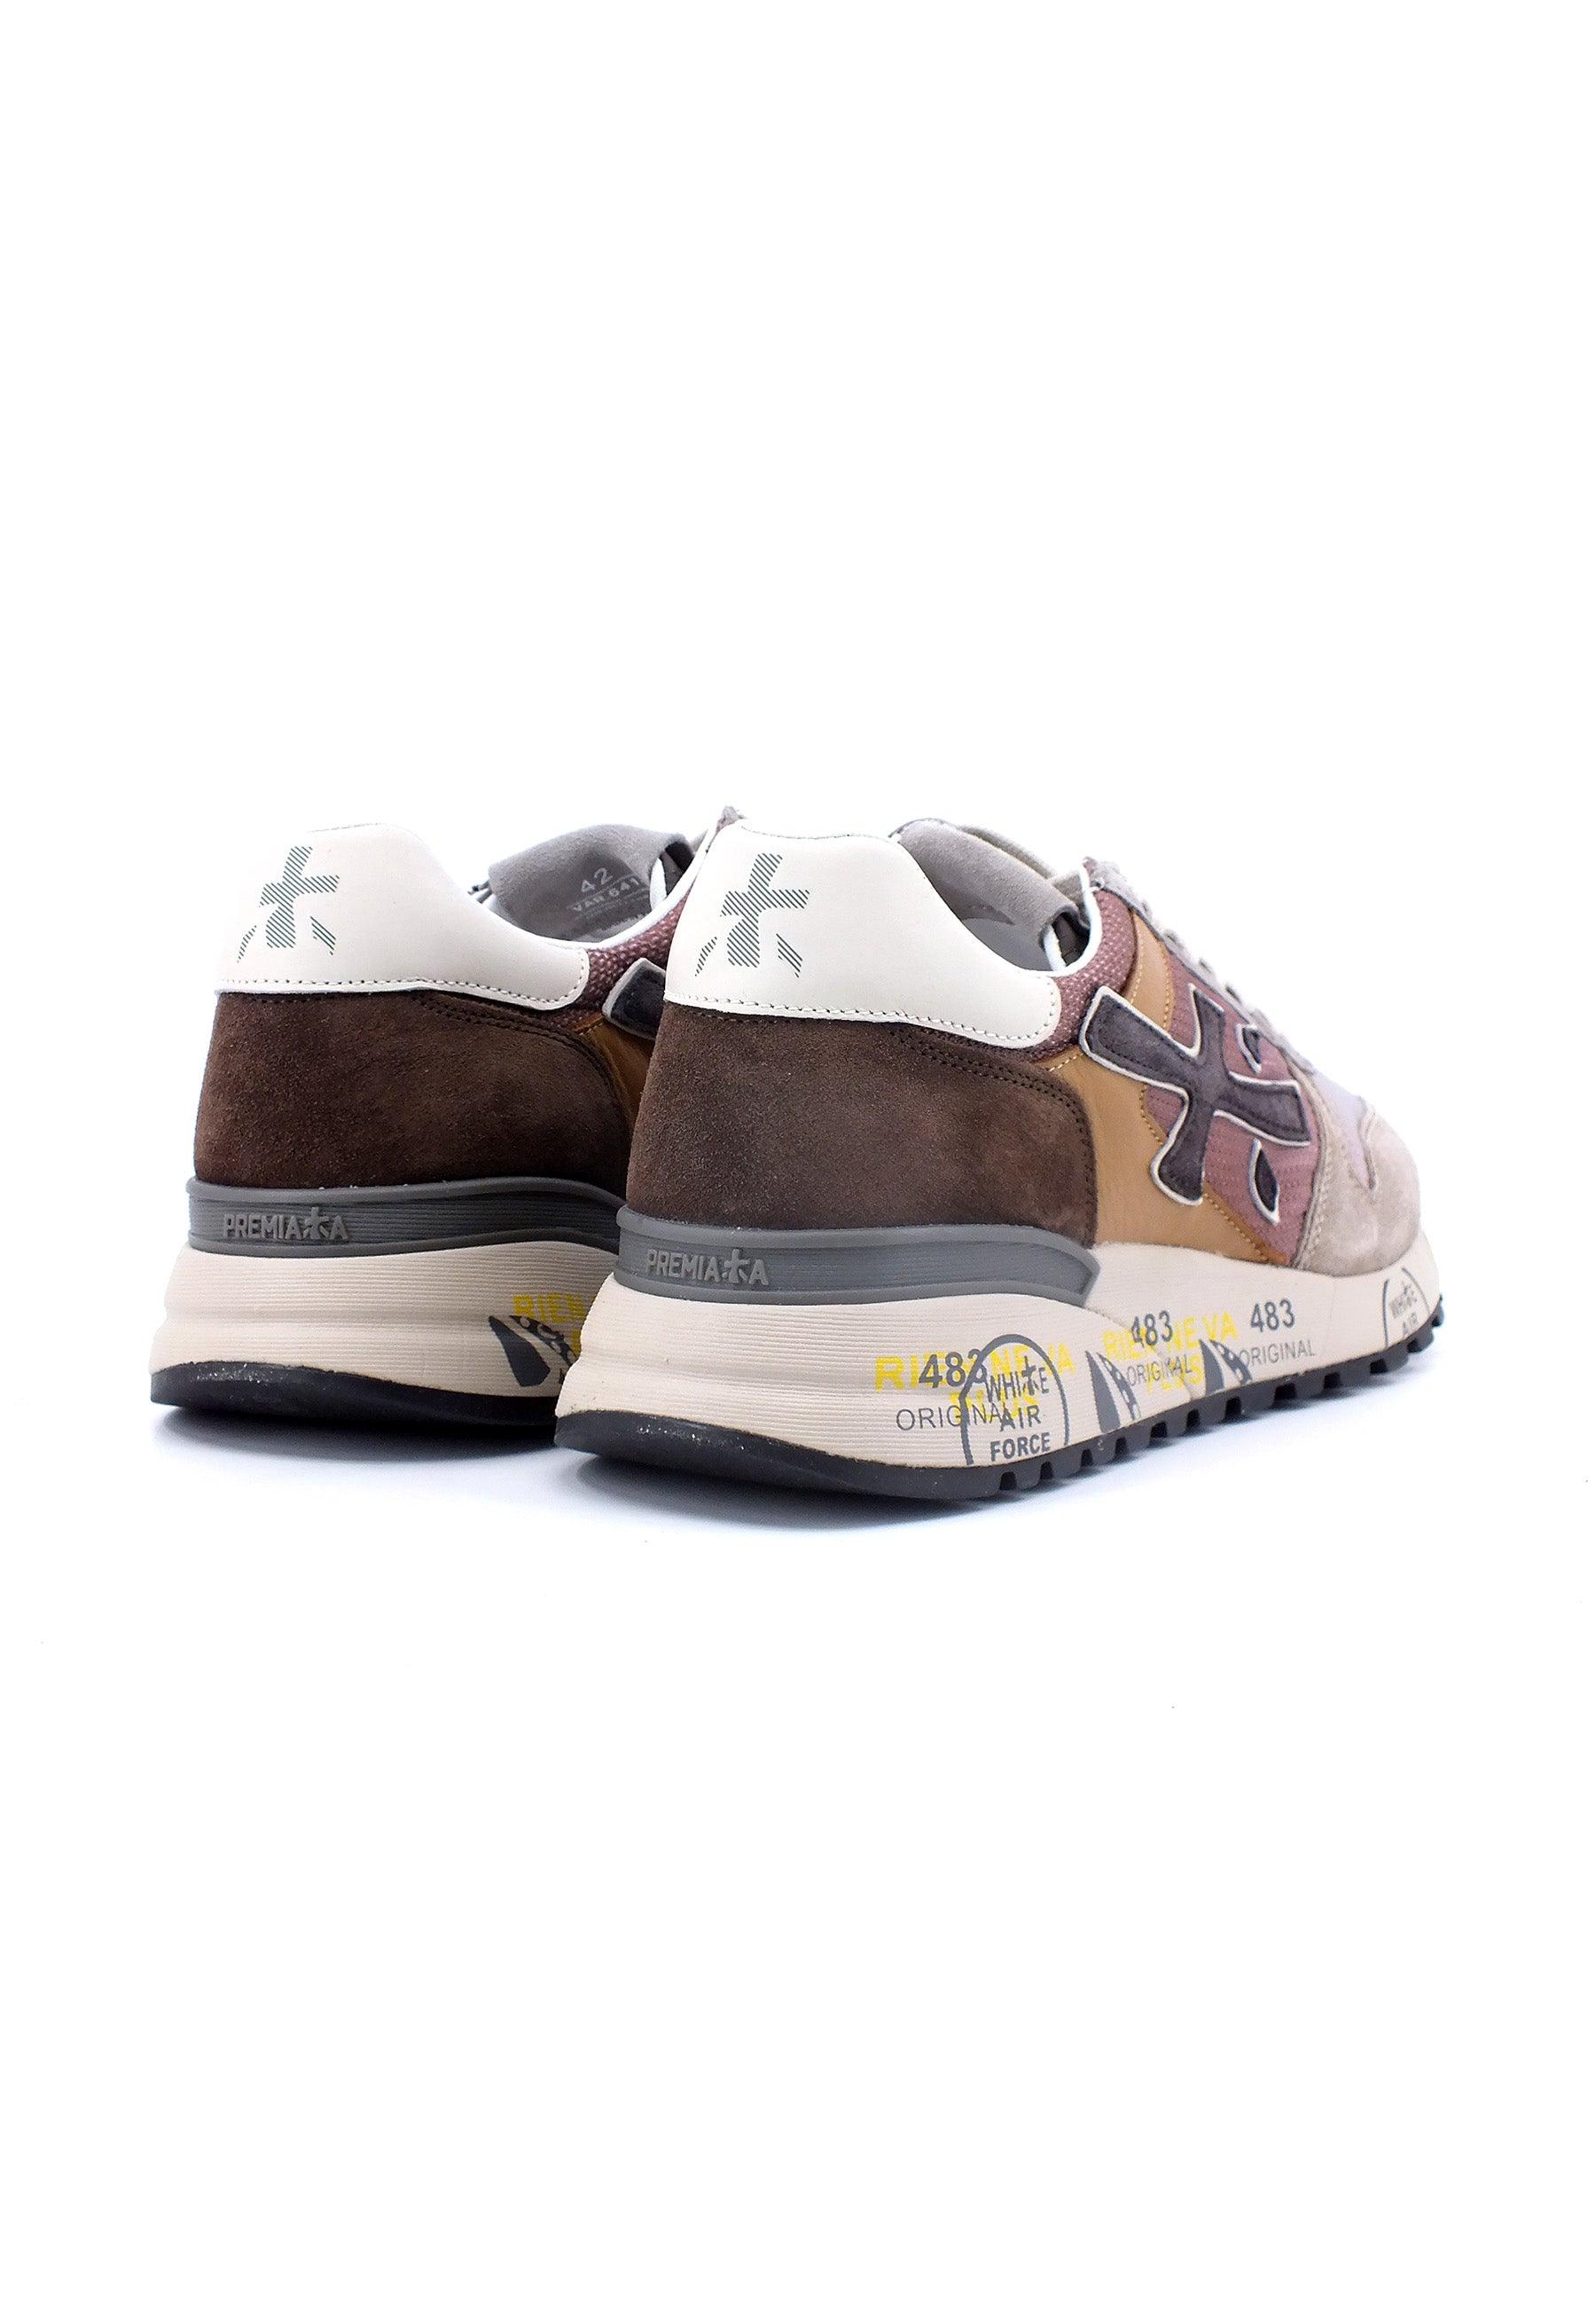 PREMIATA Sneaker Uomo Grey Brown MICK-6414 - Sandrini Calzature e Abbigliamento